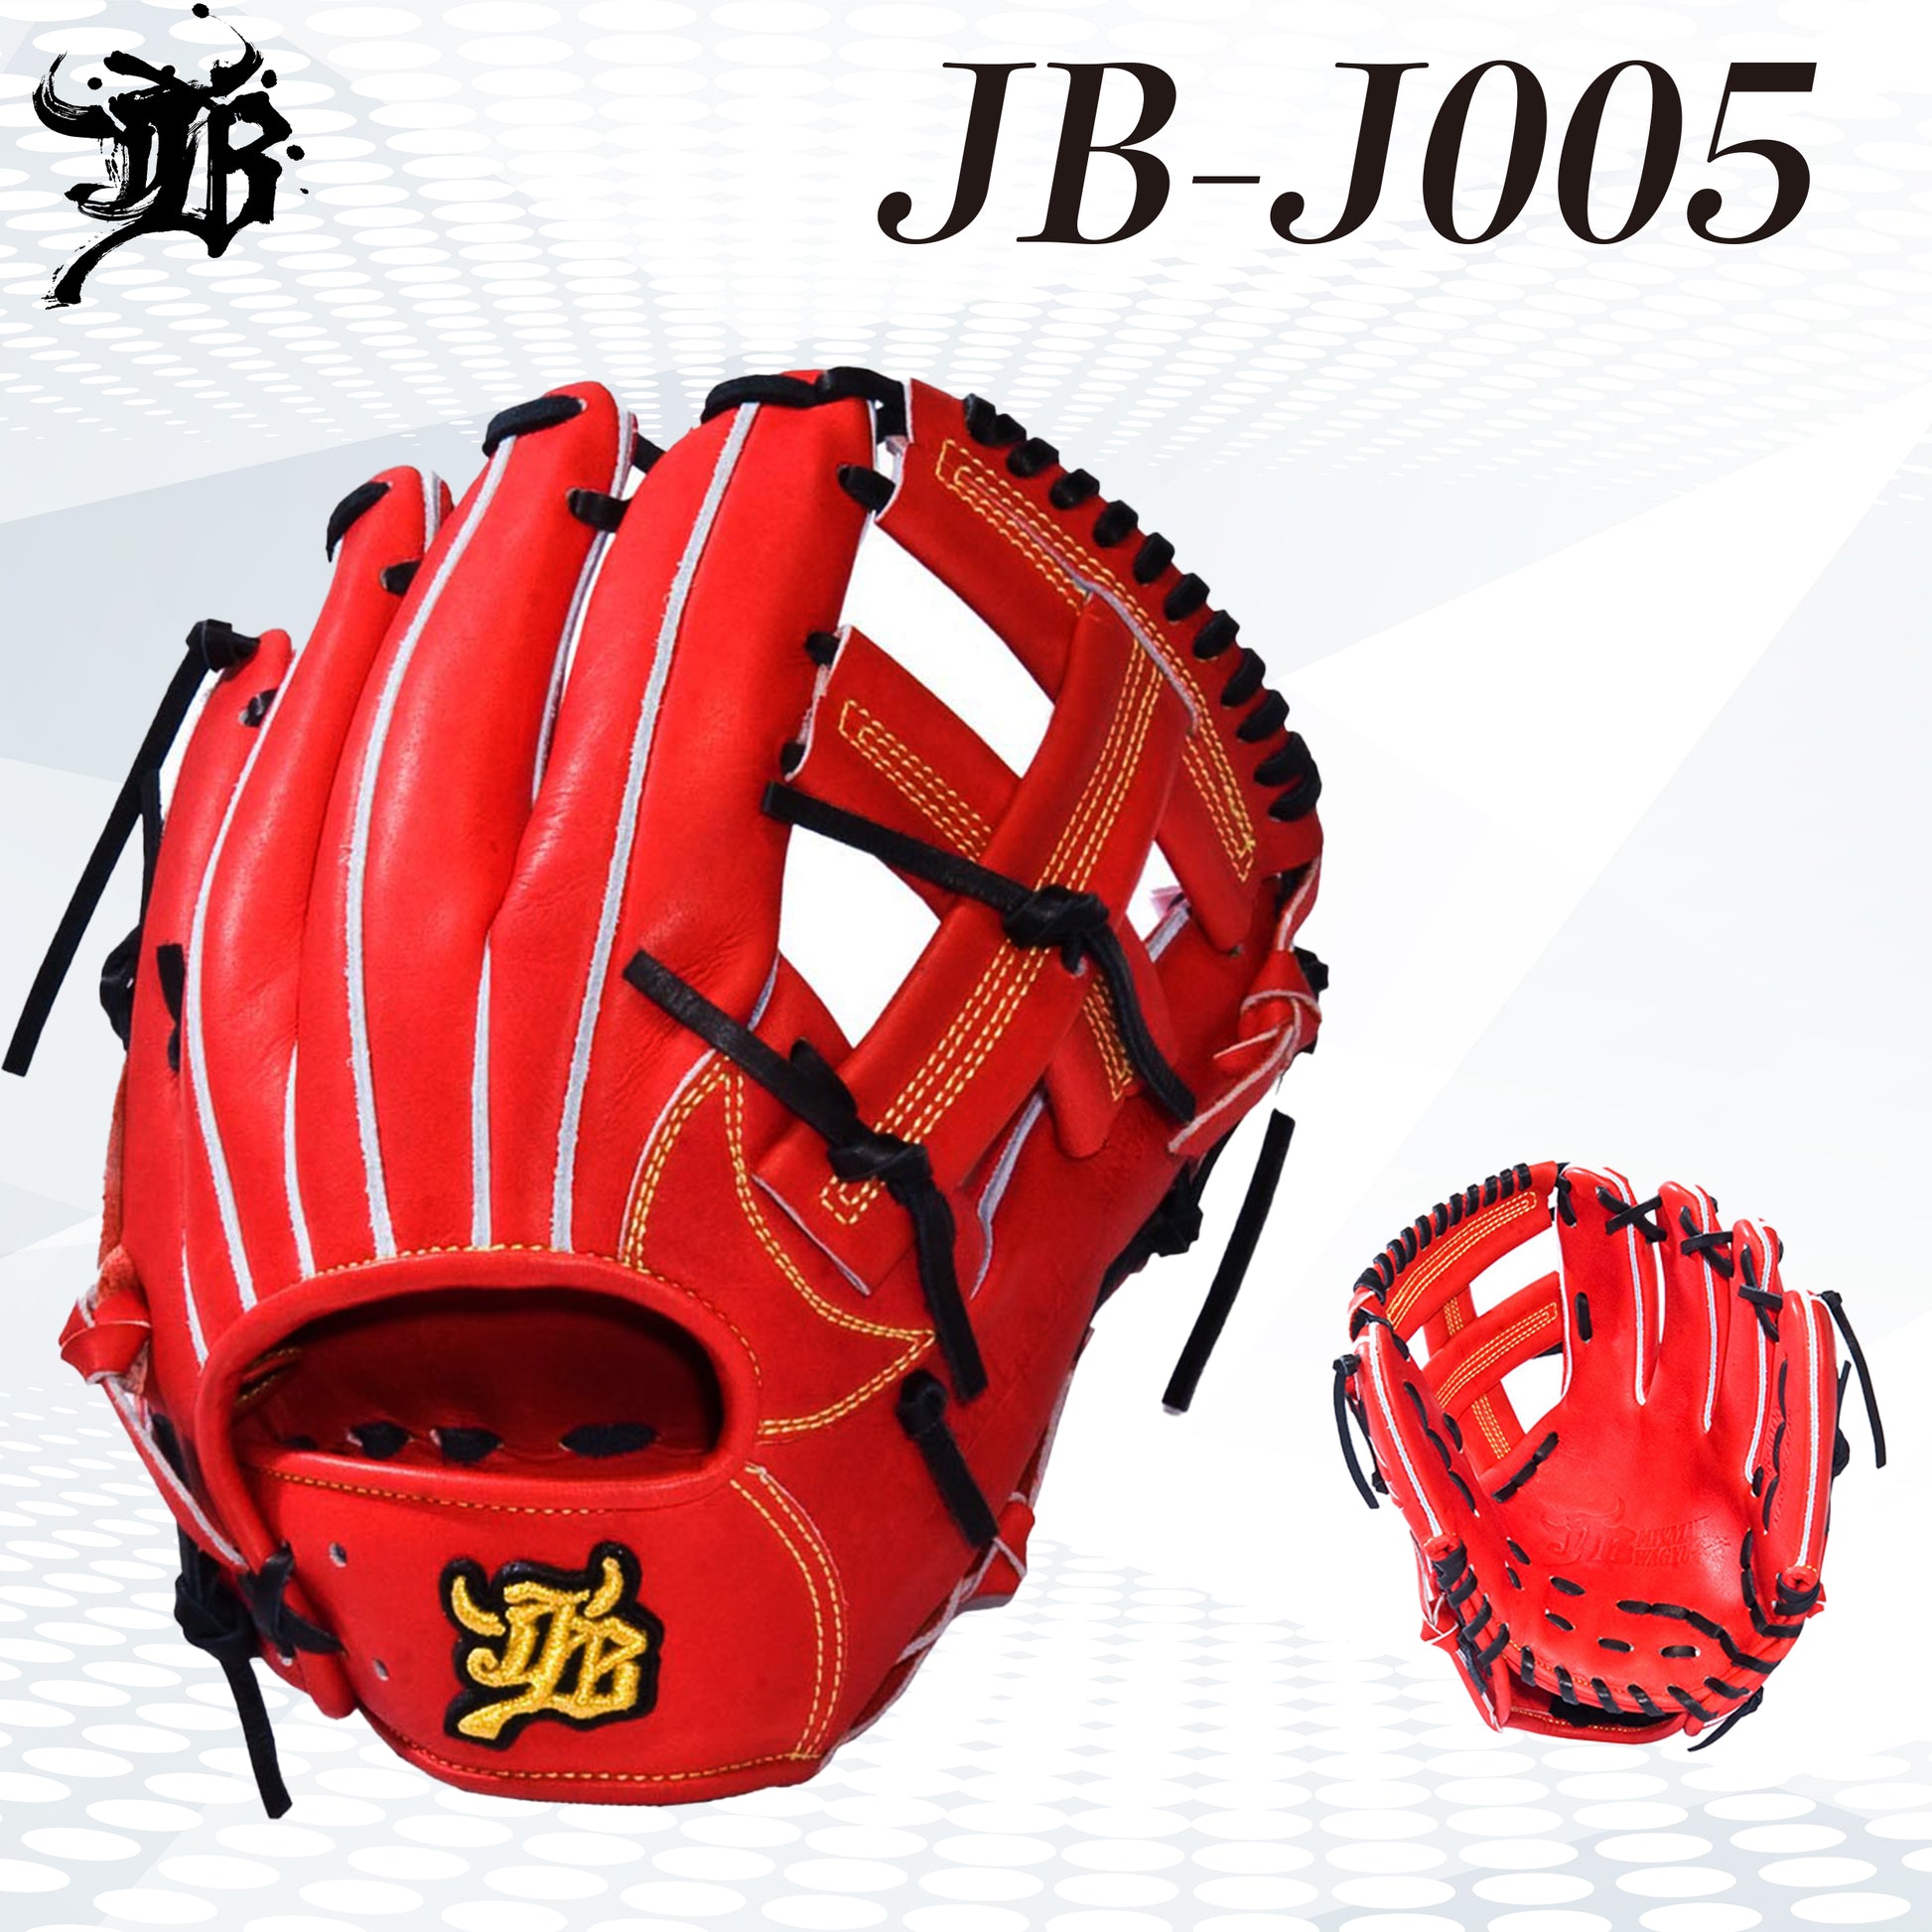 和牛JBグラブ/ジュニア用/Lサイズ/JB-J005/型付け可能 - ボールパークドットコム